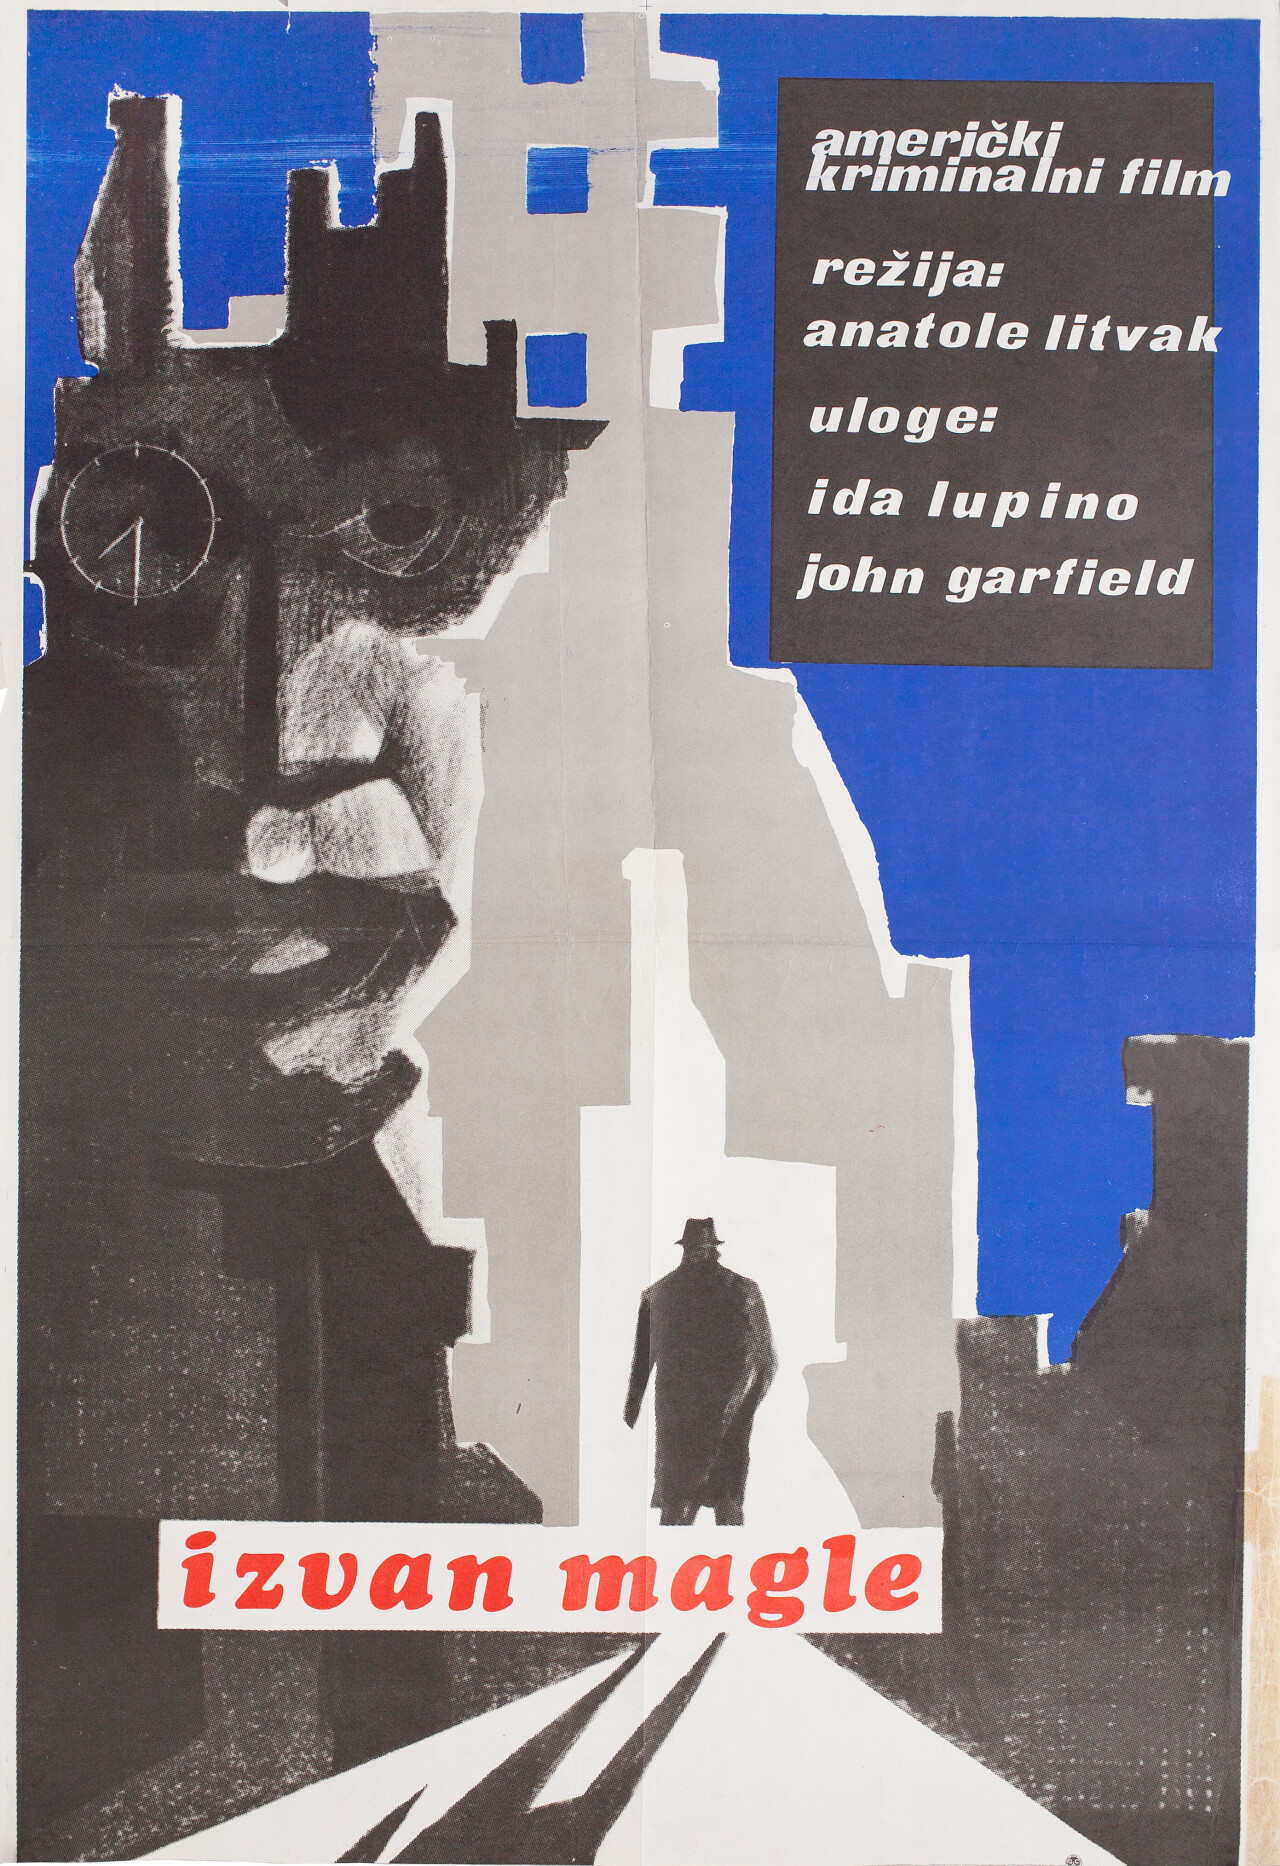 Берег в тумане (Out of the Fog, 1941), режиссёр Анатоль Литвак, югославский постер к фильму (графический дизайн, 1940 год)